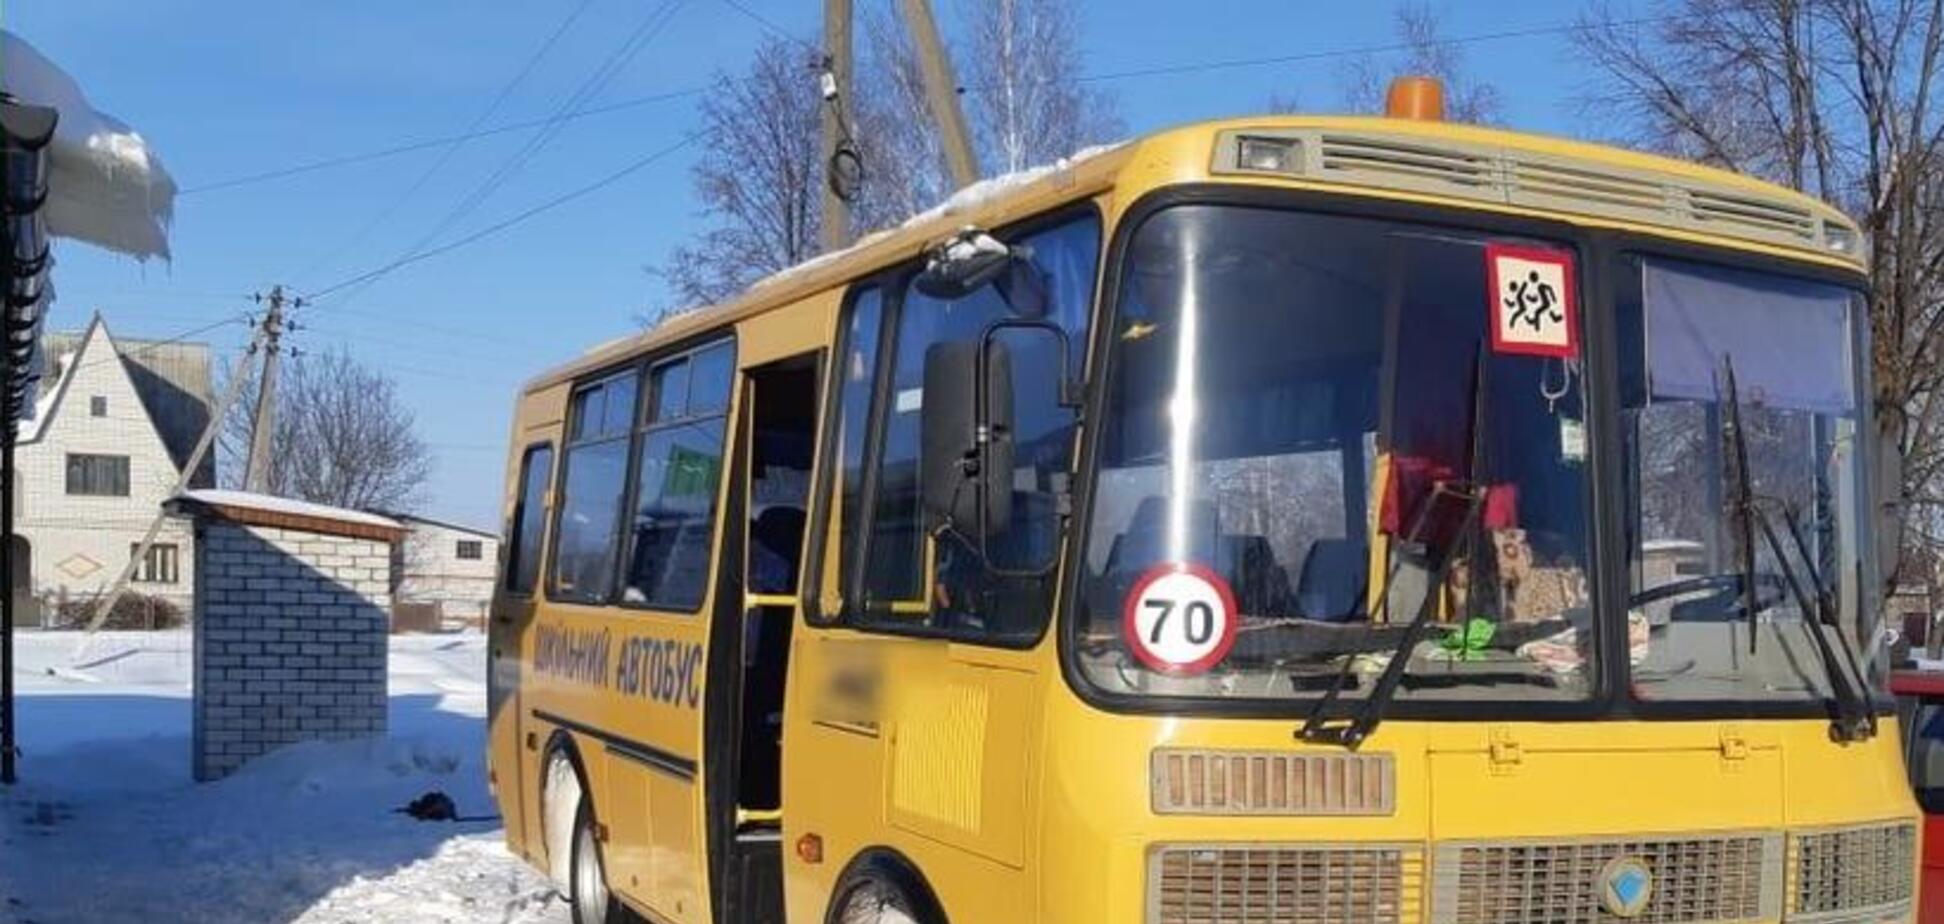 Под Киевом дети массово отравились в школьном автобусе: трое в реанимации 